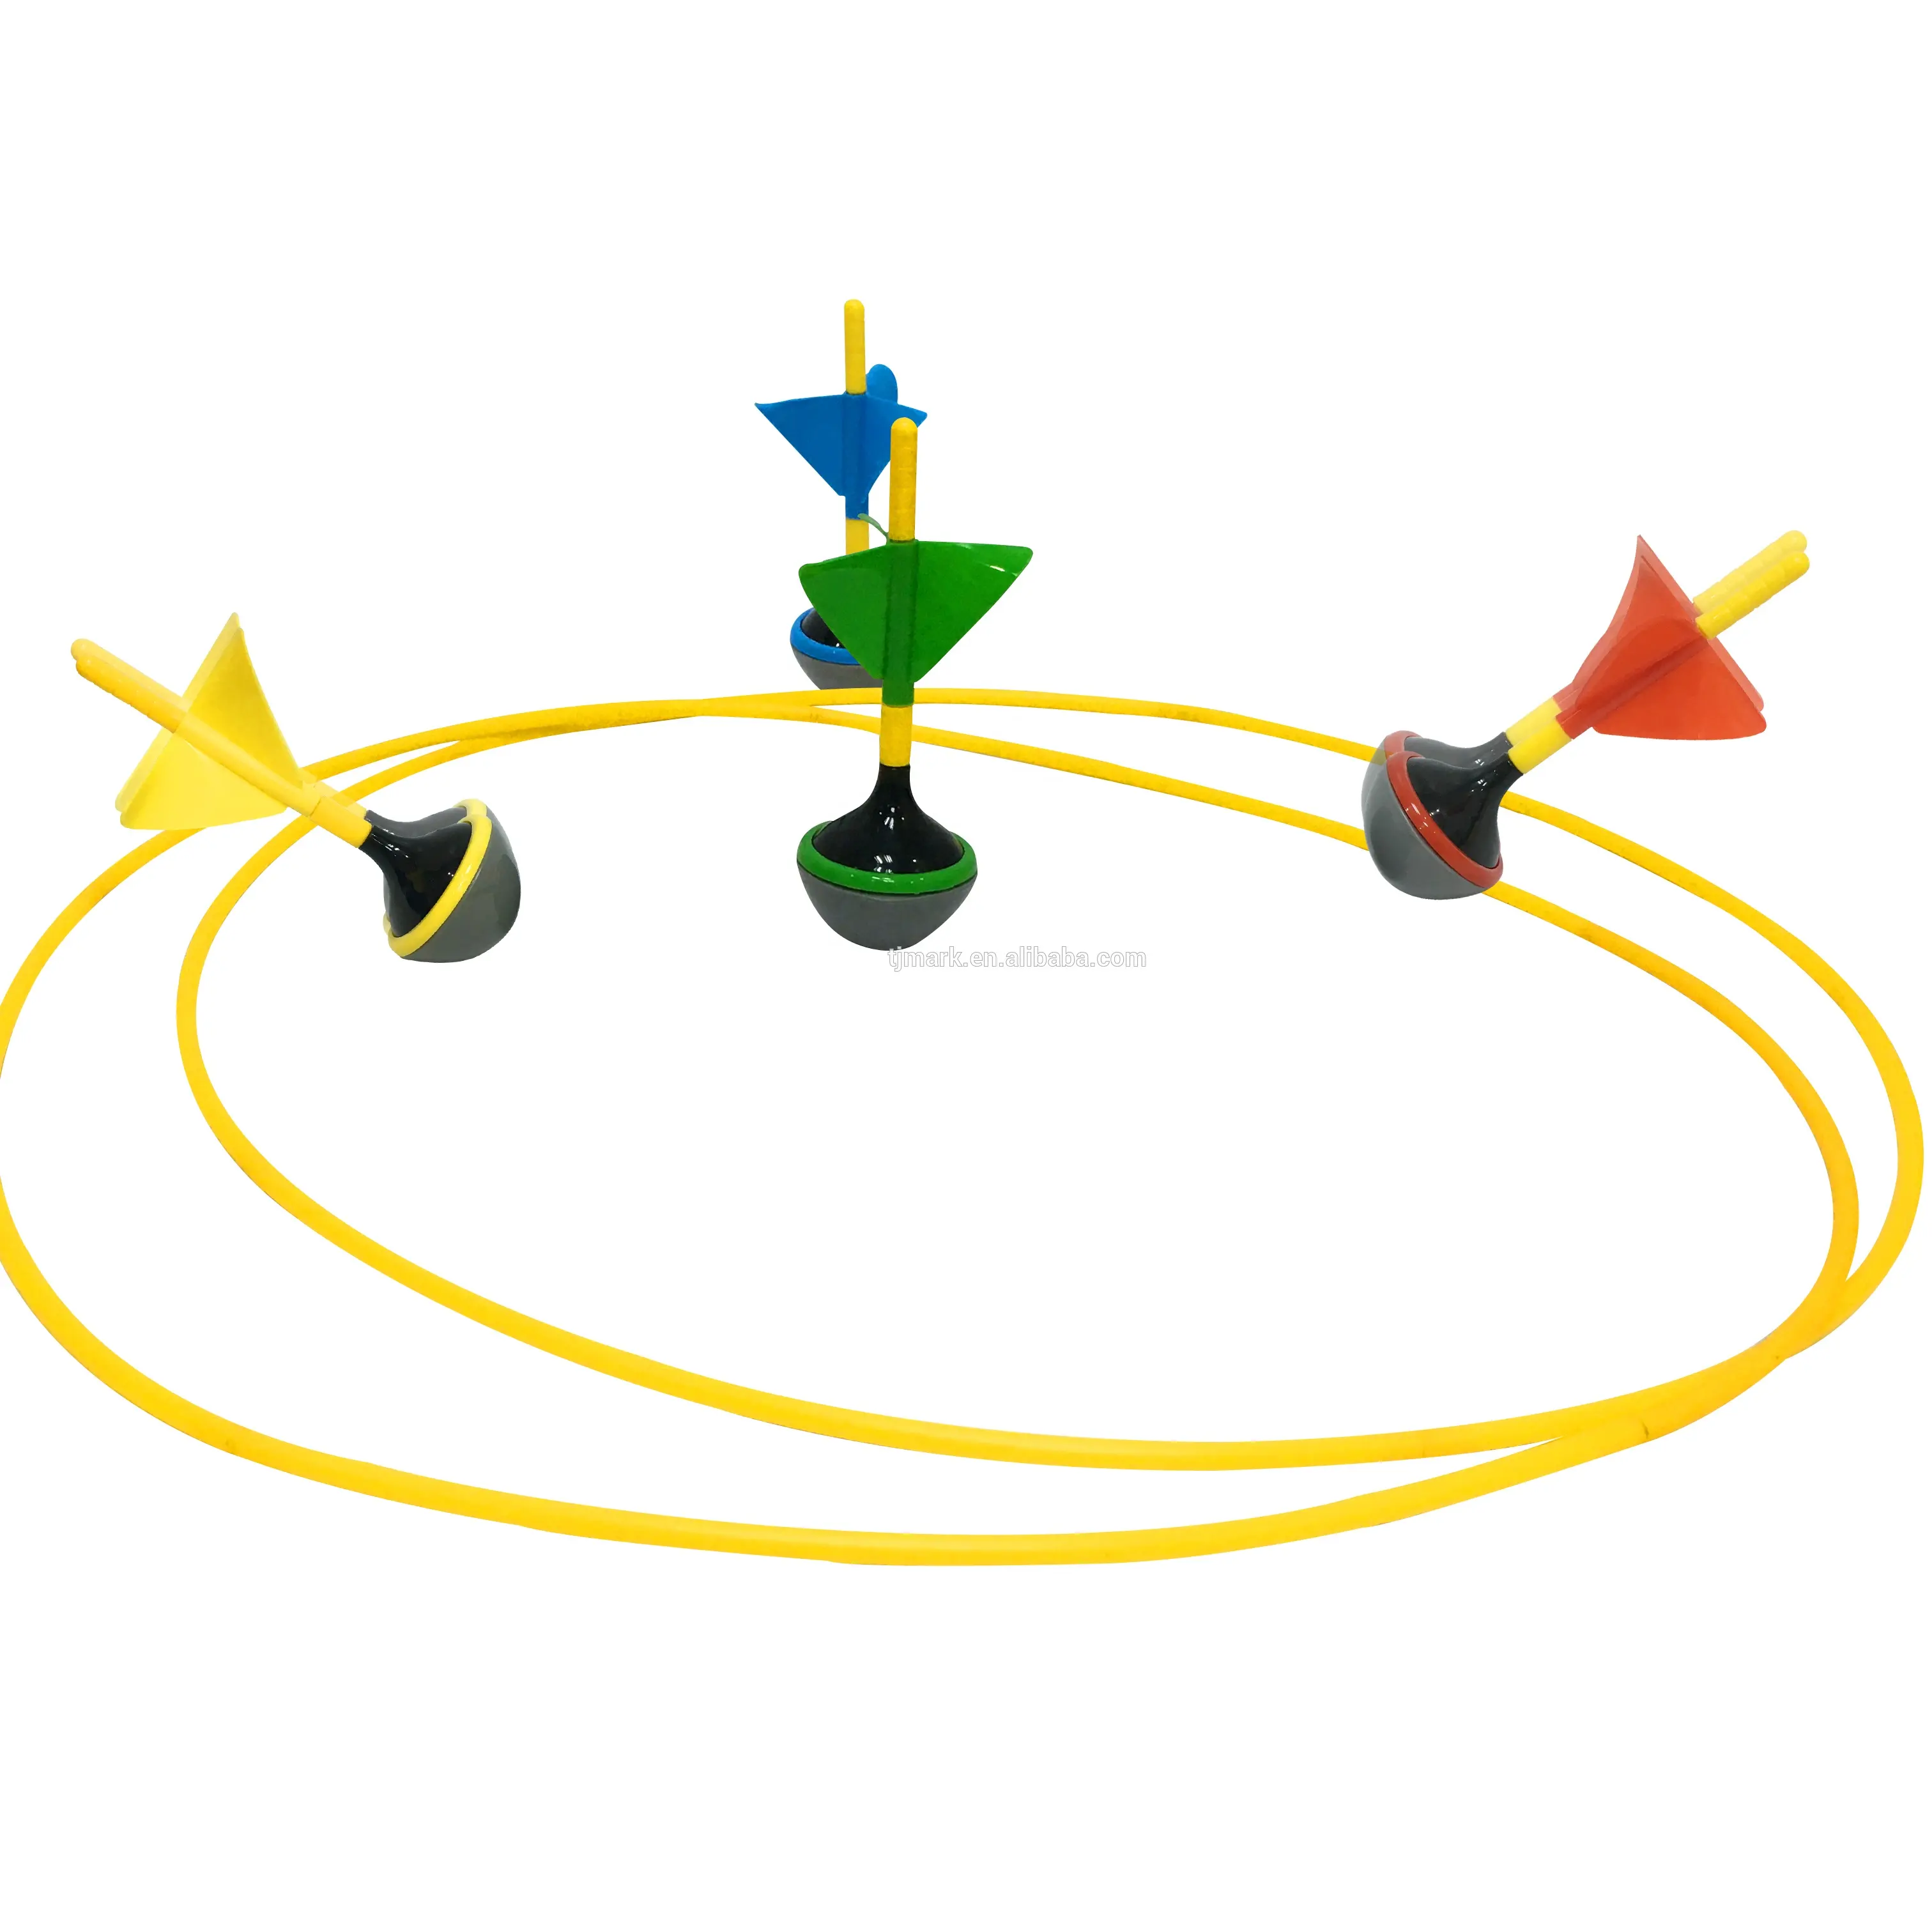 Prato di plastica Dart set gioco Da Giardino set Comet palla Personalizzato colorato gioco di sport i più venduti 2020 per amazon giocattoli del giardino